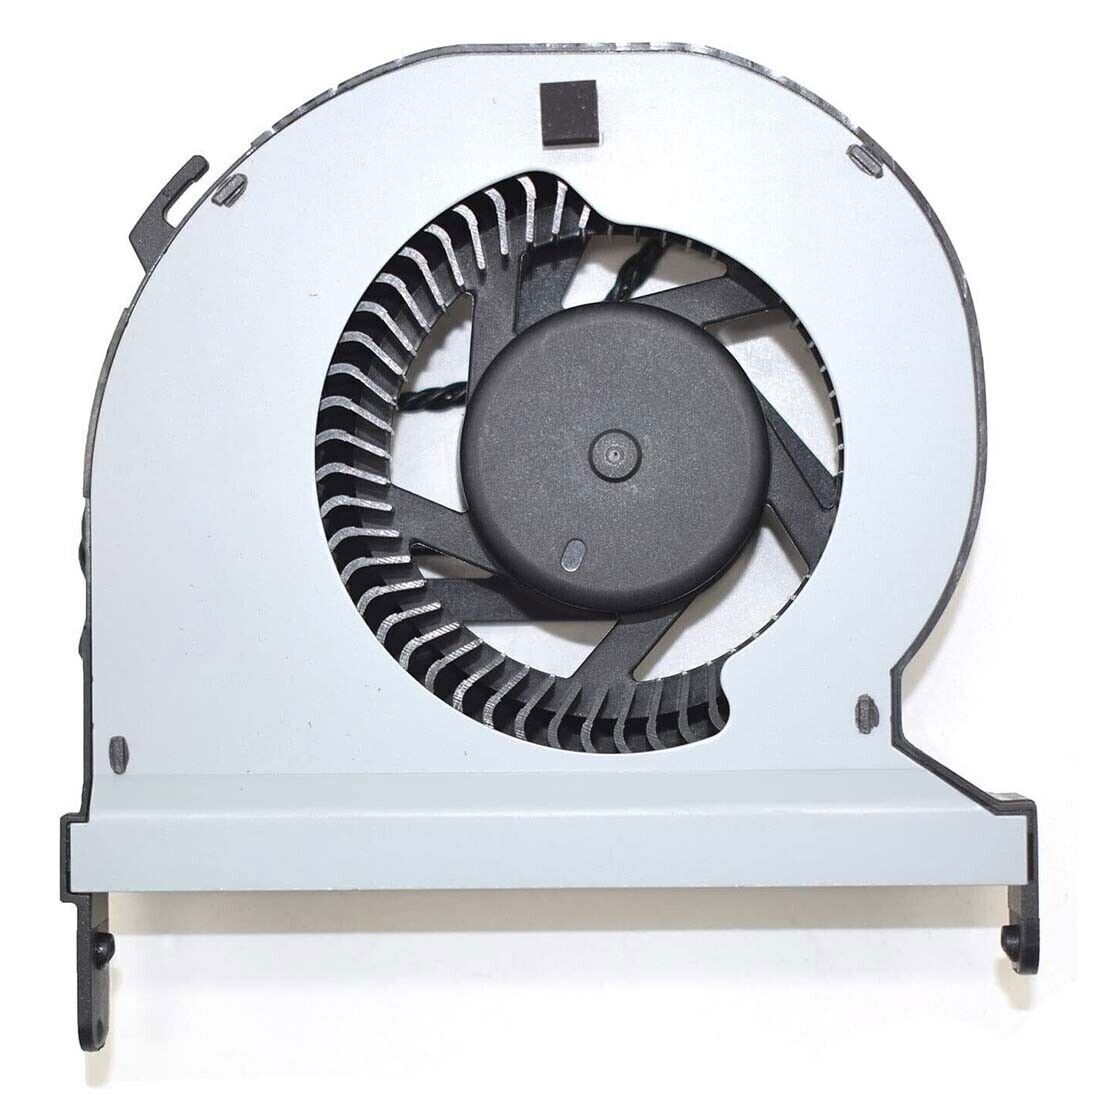 Cooling Original CPU GPU Fan for HP Z2 Mini G3 G4 907102-001 L13896-001 